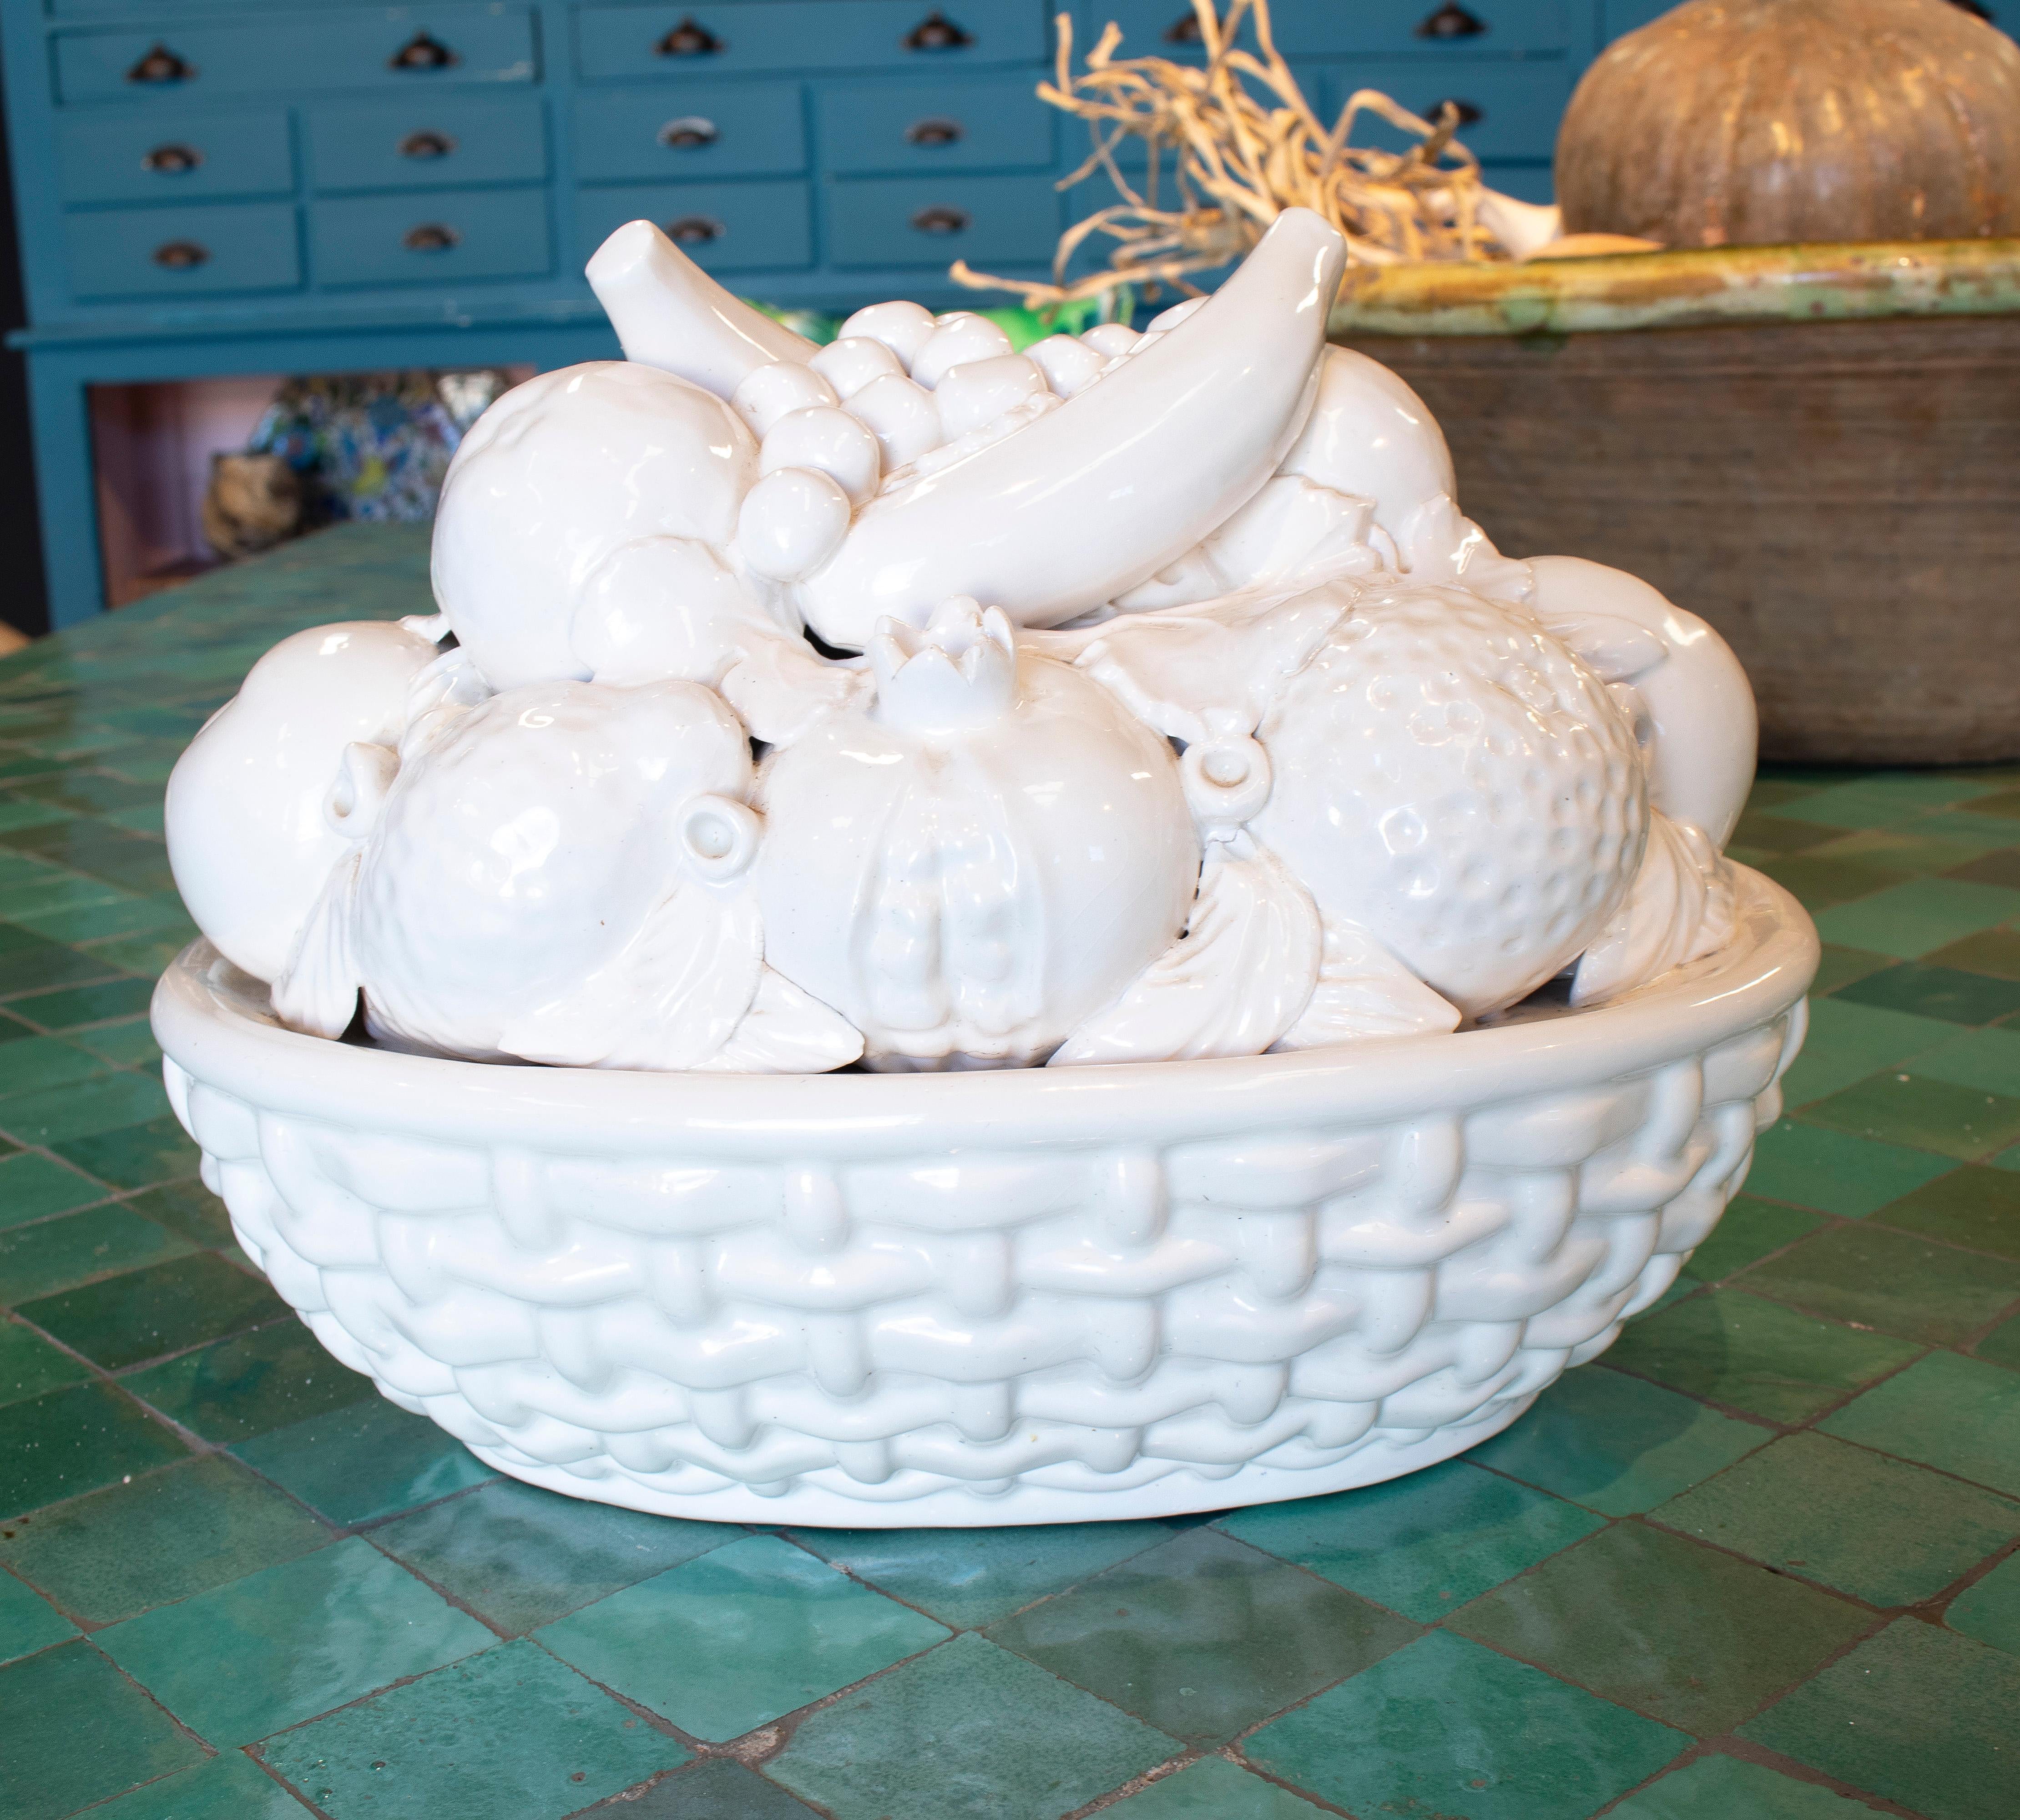 20th Century 1970s Spanish White Glazed Manises Pottery Fruit Basket Centerpiece